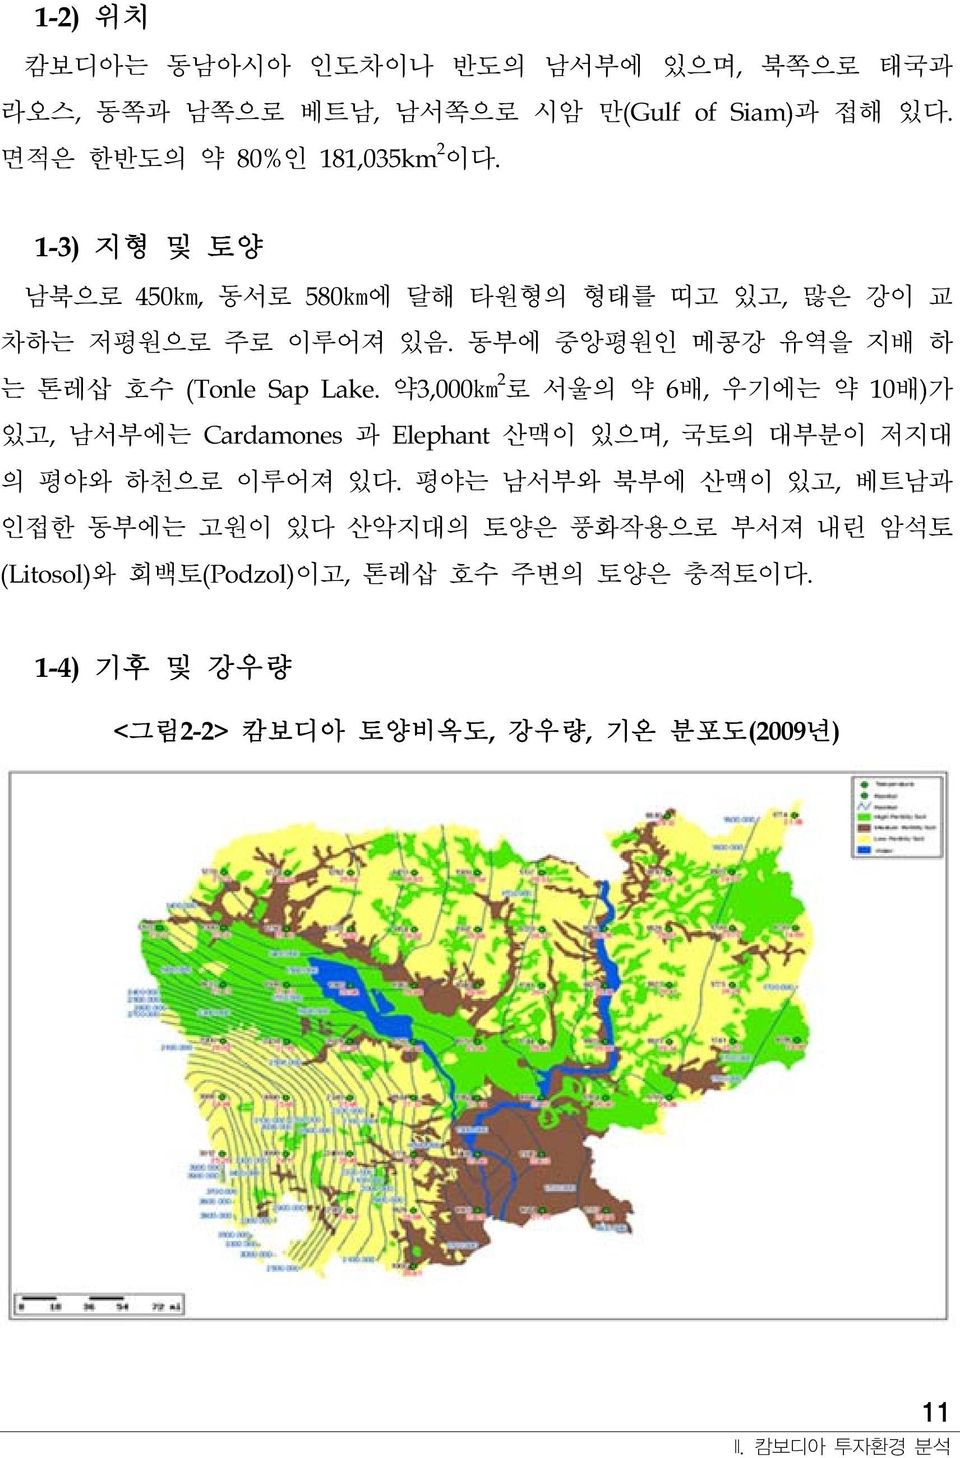 약3,000km 2 로 서울의 약 6배, 우기에는 약 10배)가 있고, 남서부에는 Cardamones 과 Elephant 산맥이 있으며, 국토의 대부분이 저지대 의 평야와 하천으로 이루어져 있다.